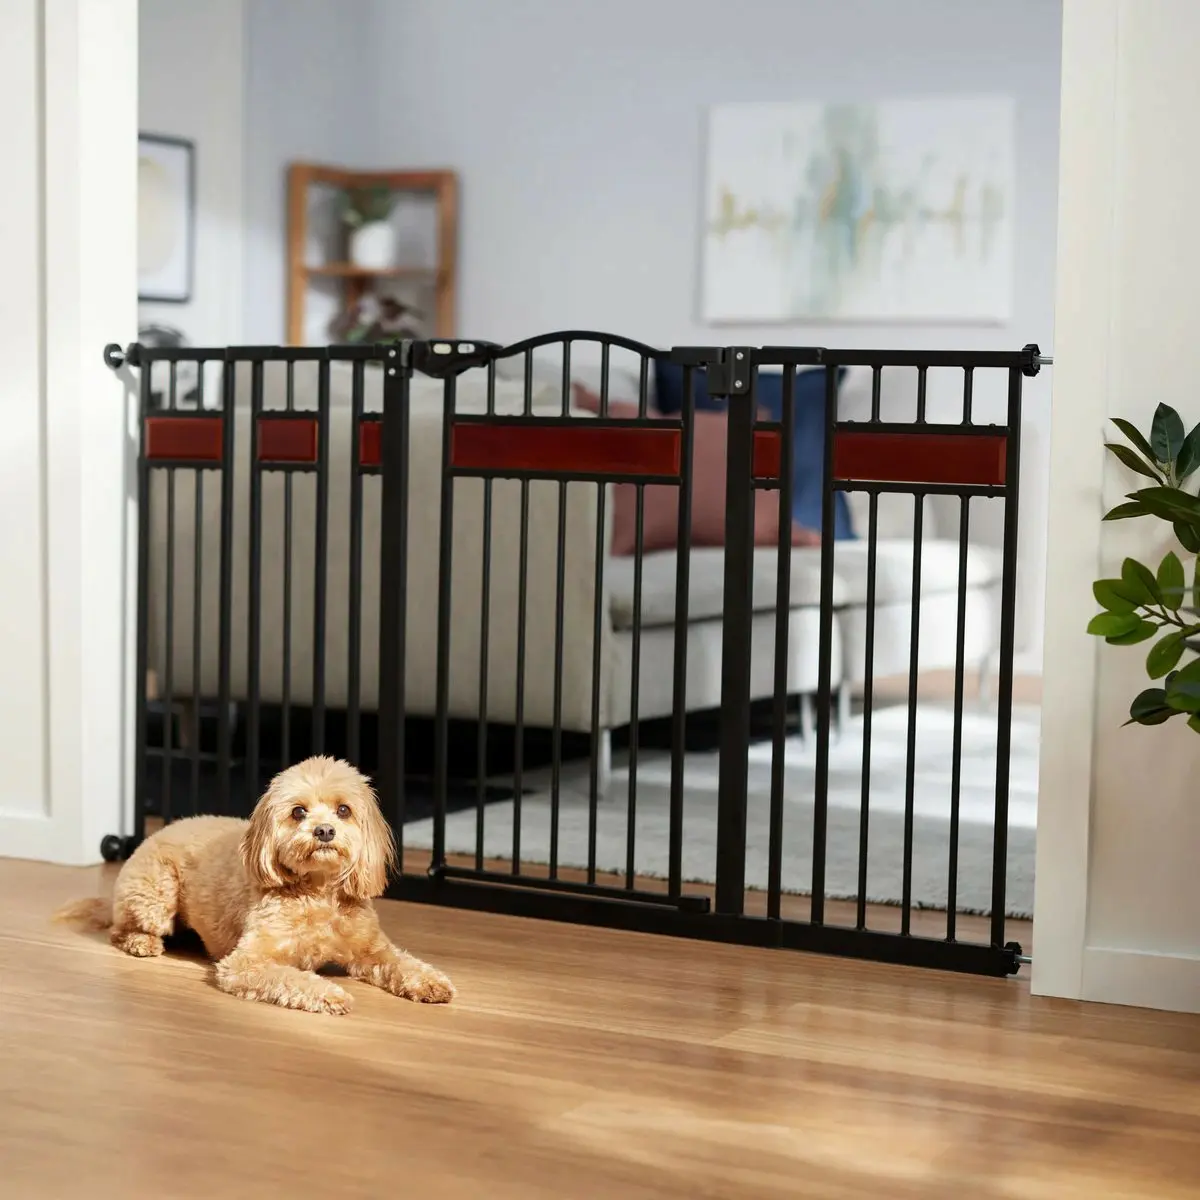 Puerta personalizada para mascotas y acentos de madera ajustables para bebés, valla de arco de metal para mascotas, barrera para perros y mascotas para puertas de escaleras